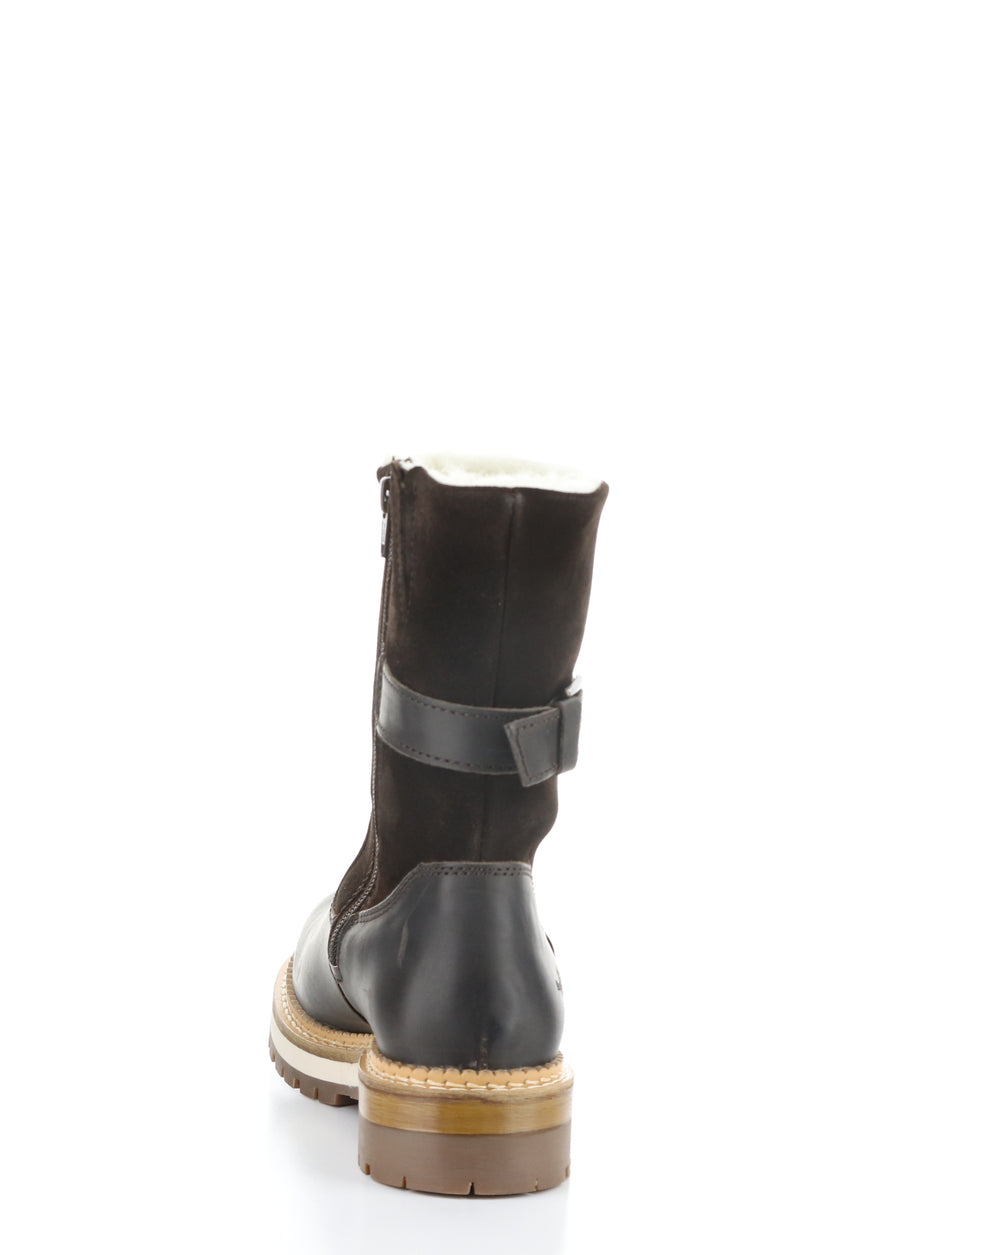 ANNEX DK BROWN/COFFEE Round Toe Boots